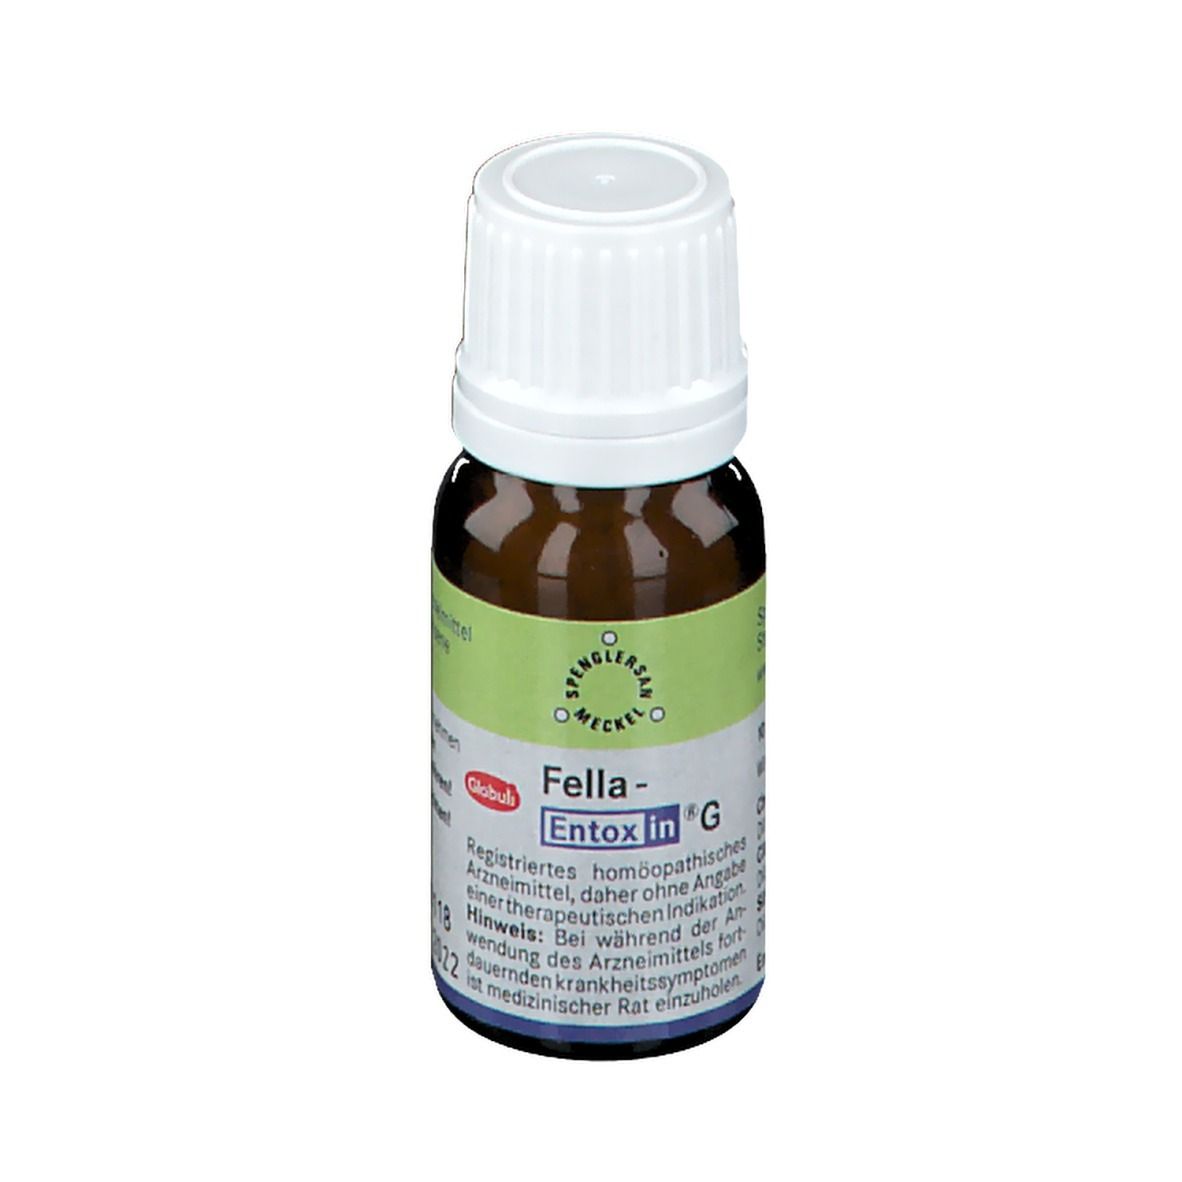 Fella-Entoxin® G